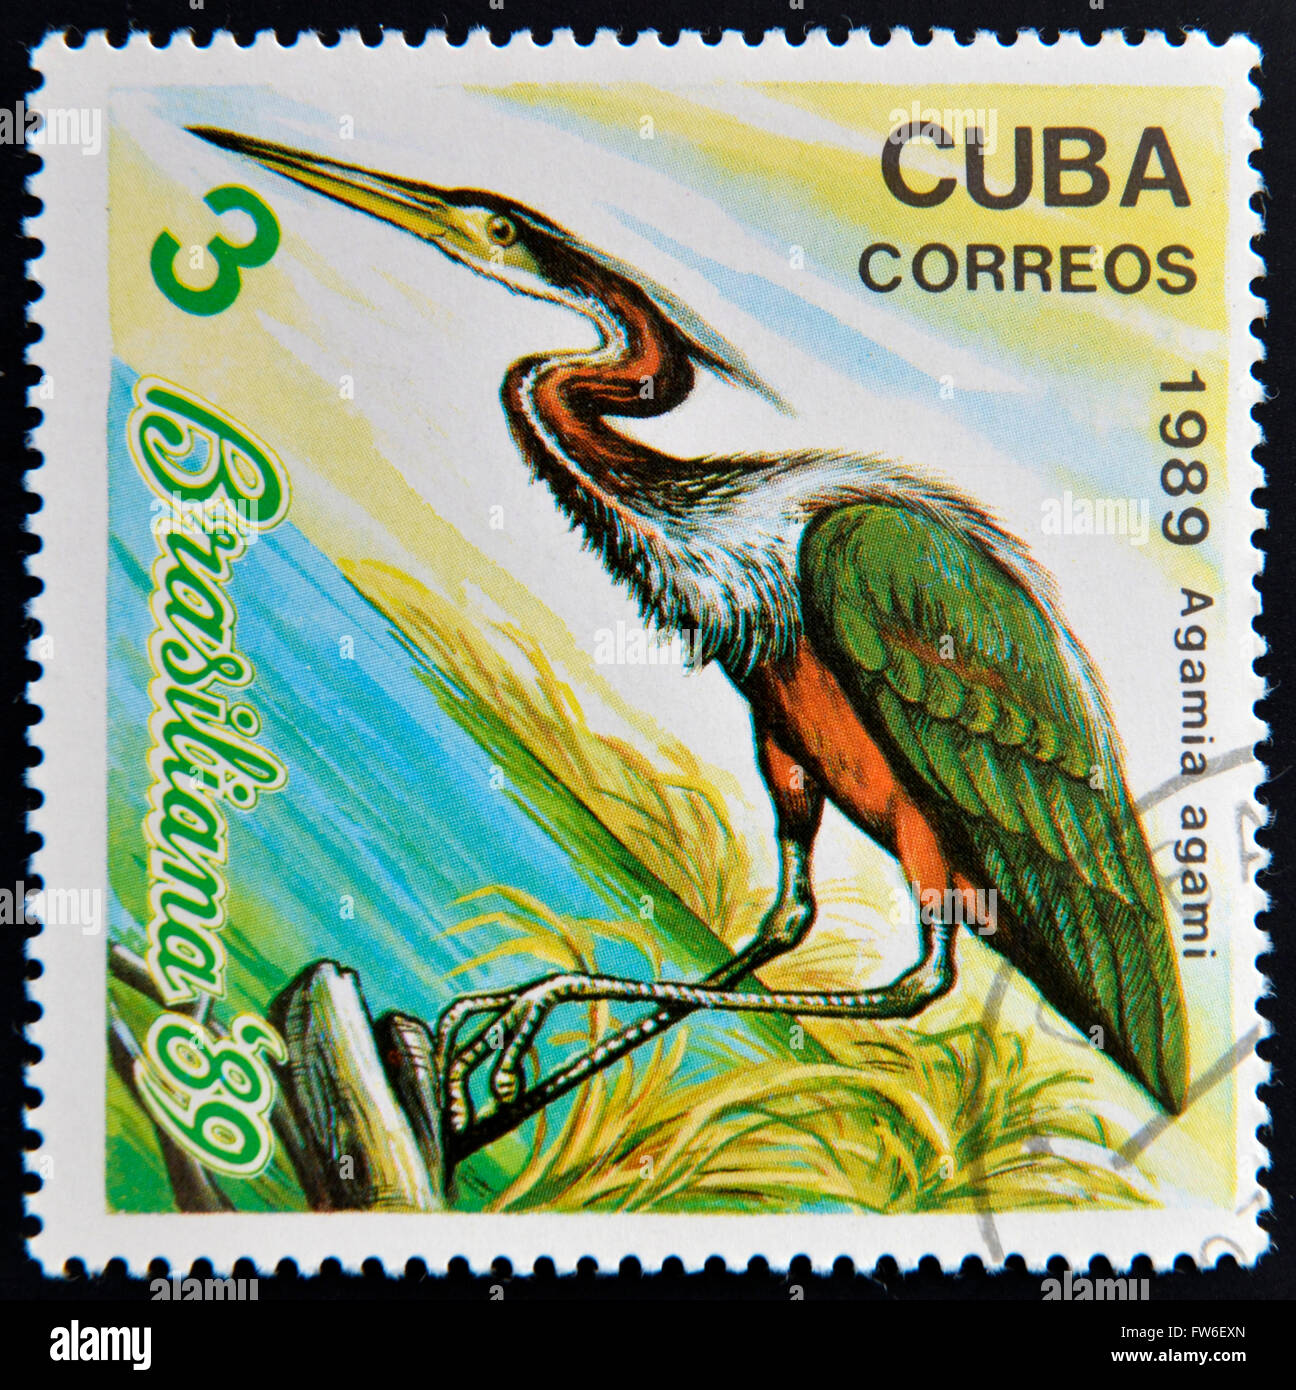 CUBA - CIRCA 1989: A stamp printed in the Cuba, shows the exotic bird, agamia agami, circa 1989 Stock Photo